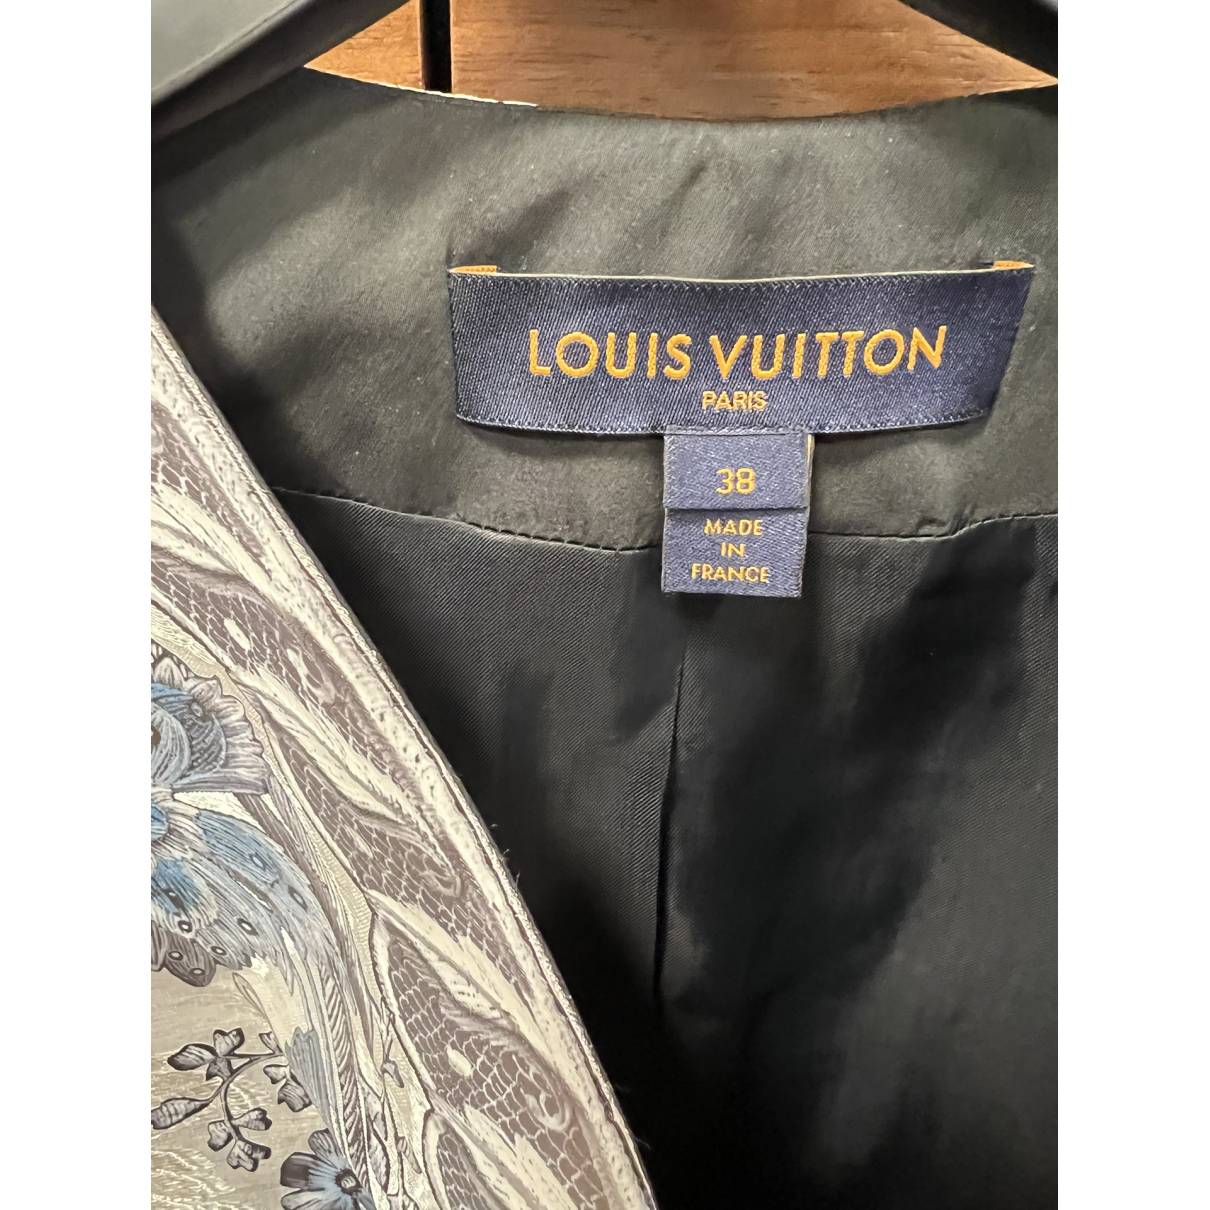 Louis Vuitton Jackets for Women - Vestiaire Collective